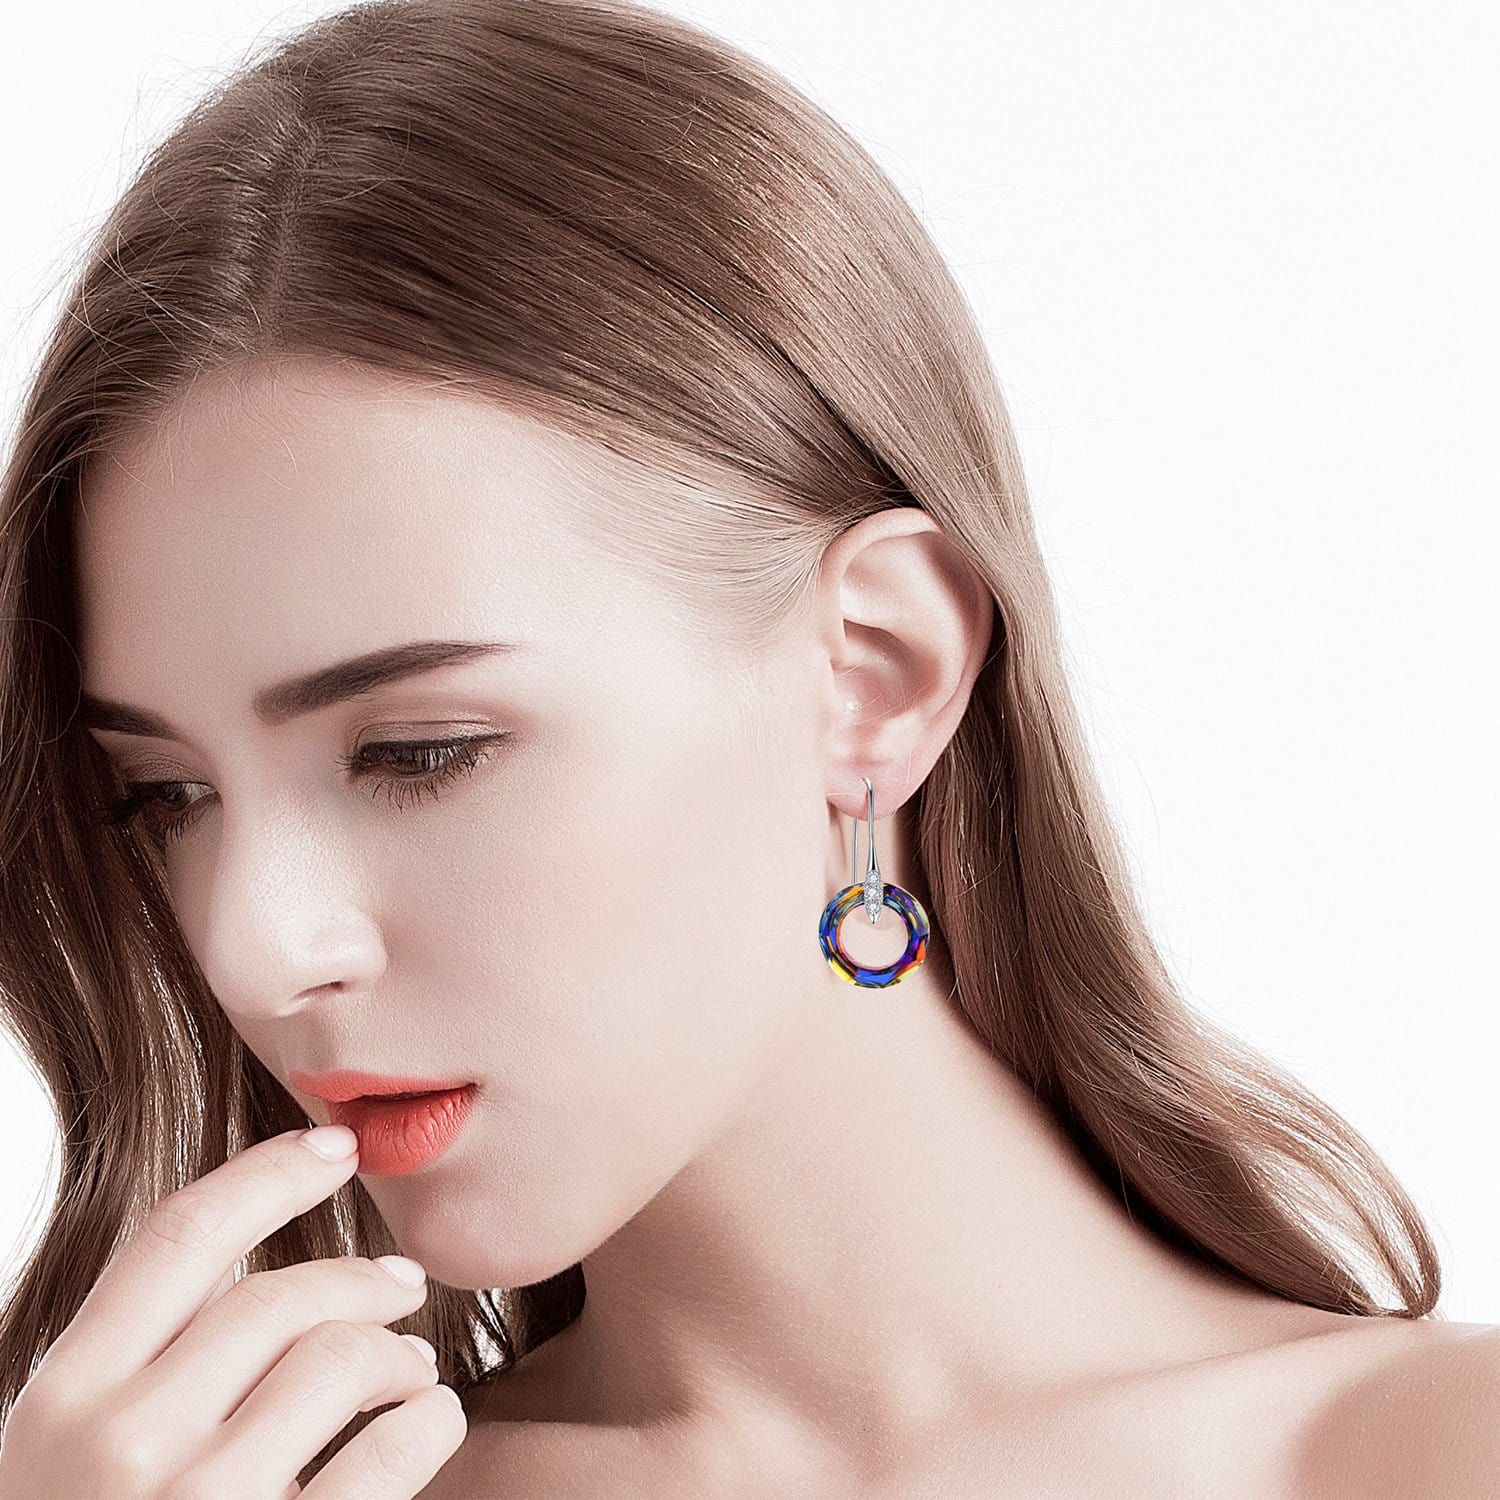 Cosmic Ring Crystal Drop Earrings Women Jewelry (V2) - Dangle earrings - Taanaa Jewelry